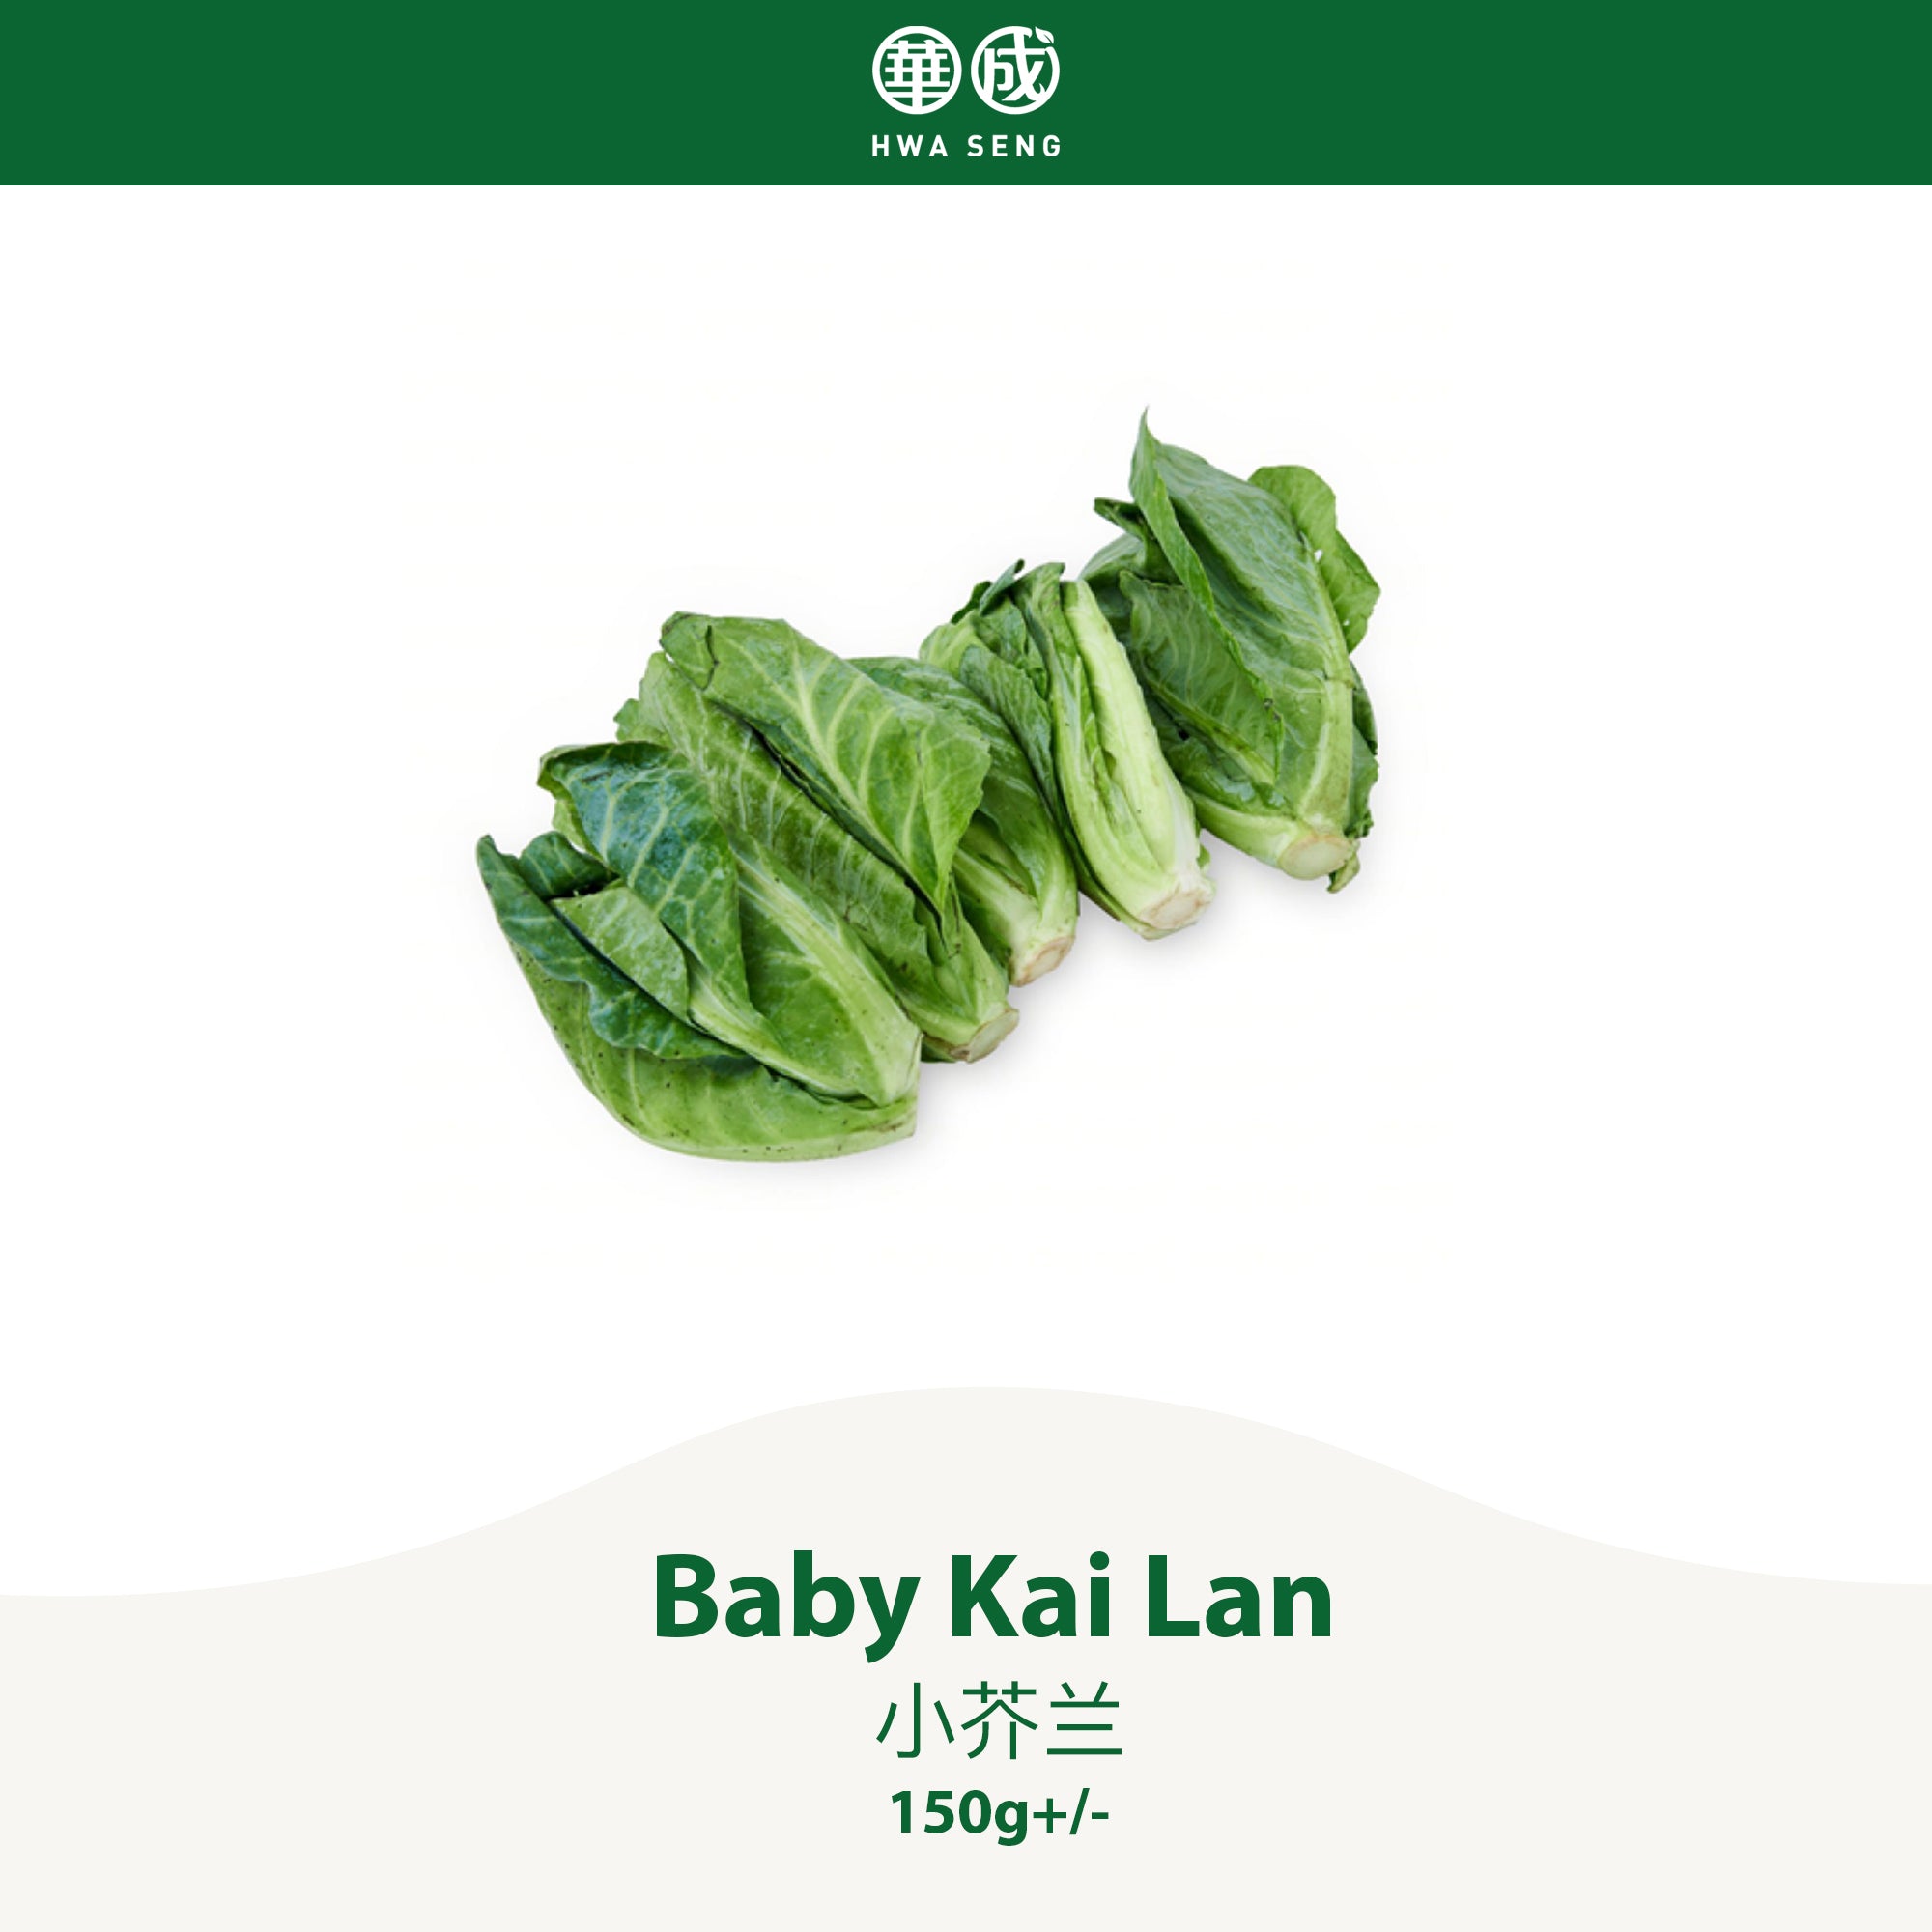 Baby Kai Lan 小芥兰 150g+/-